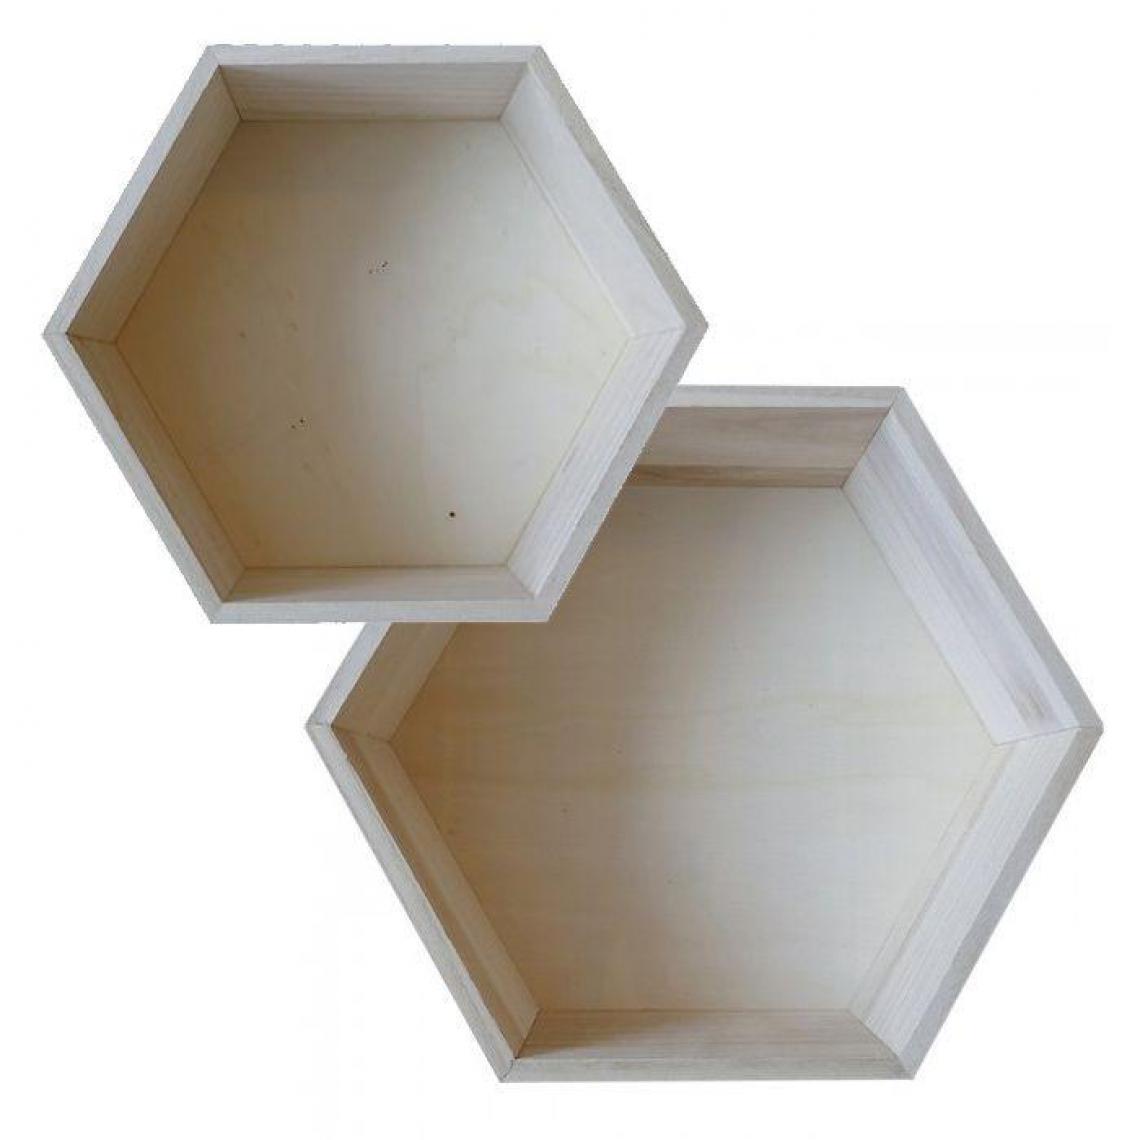 Artemio - 2 étagères hexagonales en bois - 27 x 23,5 cm et 30 x 26,5 cm - Objets déco